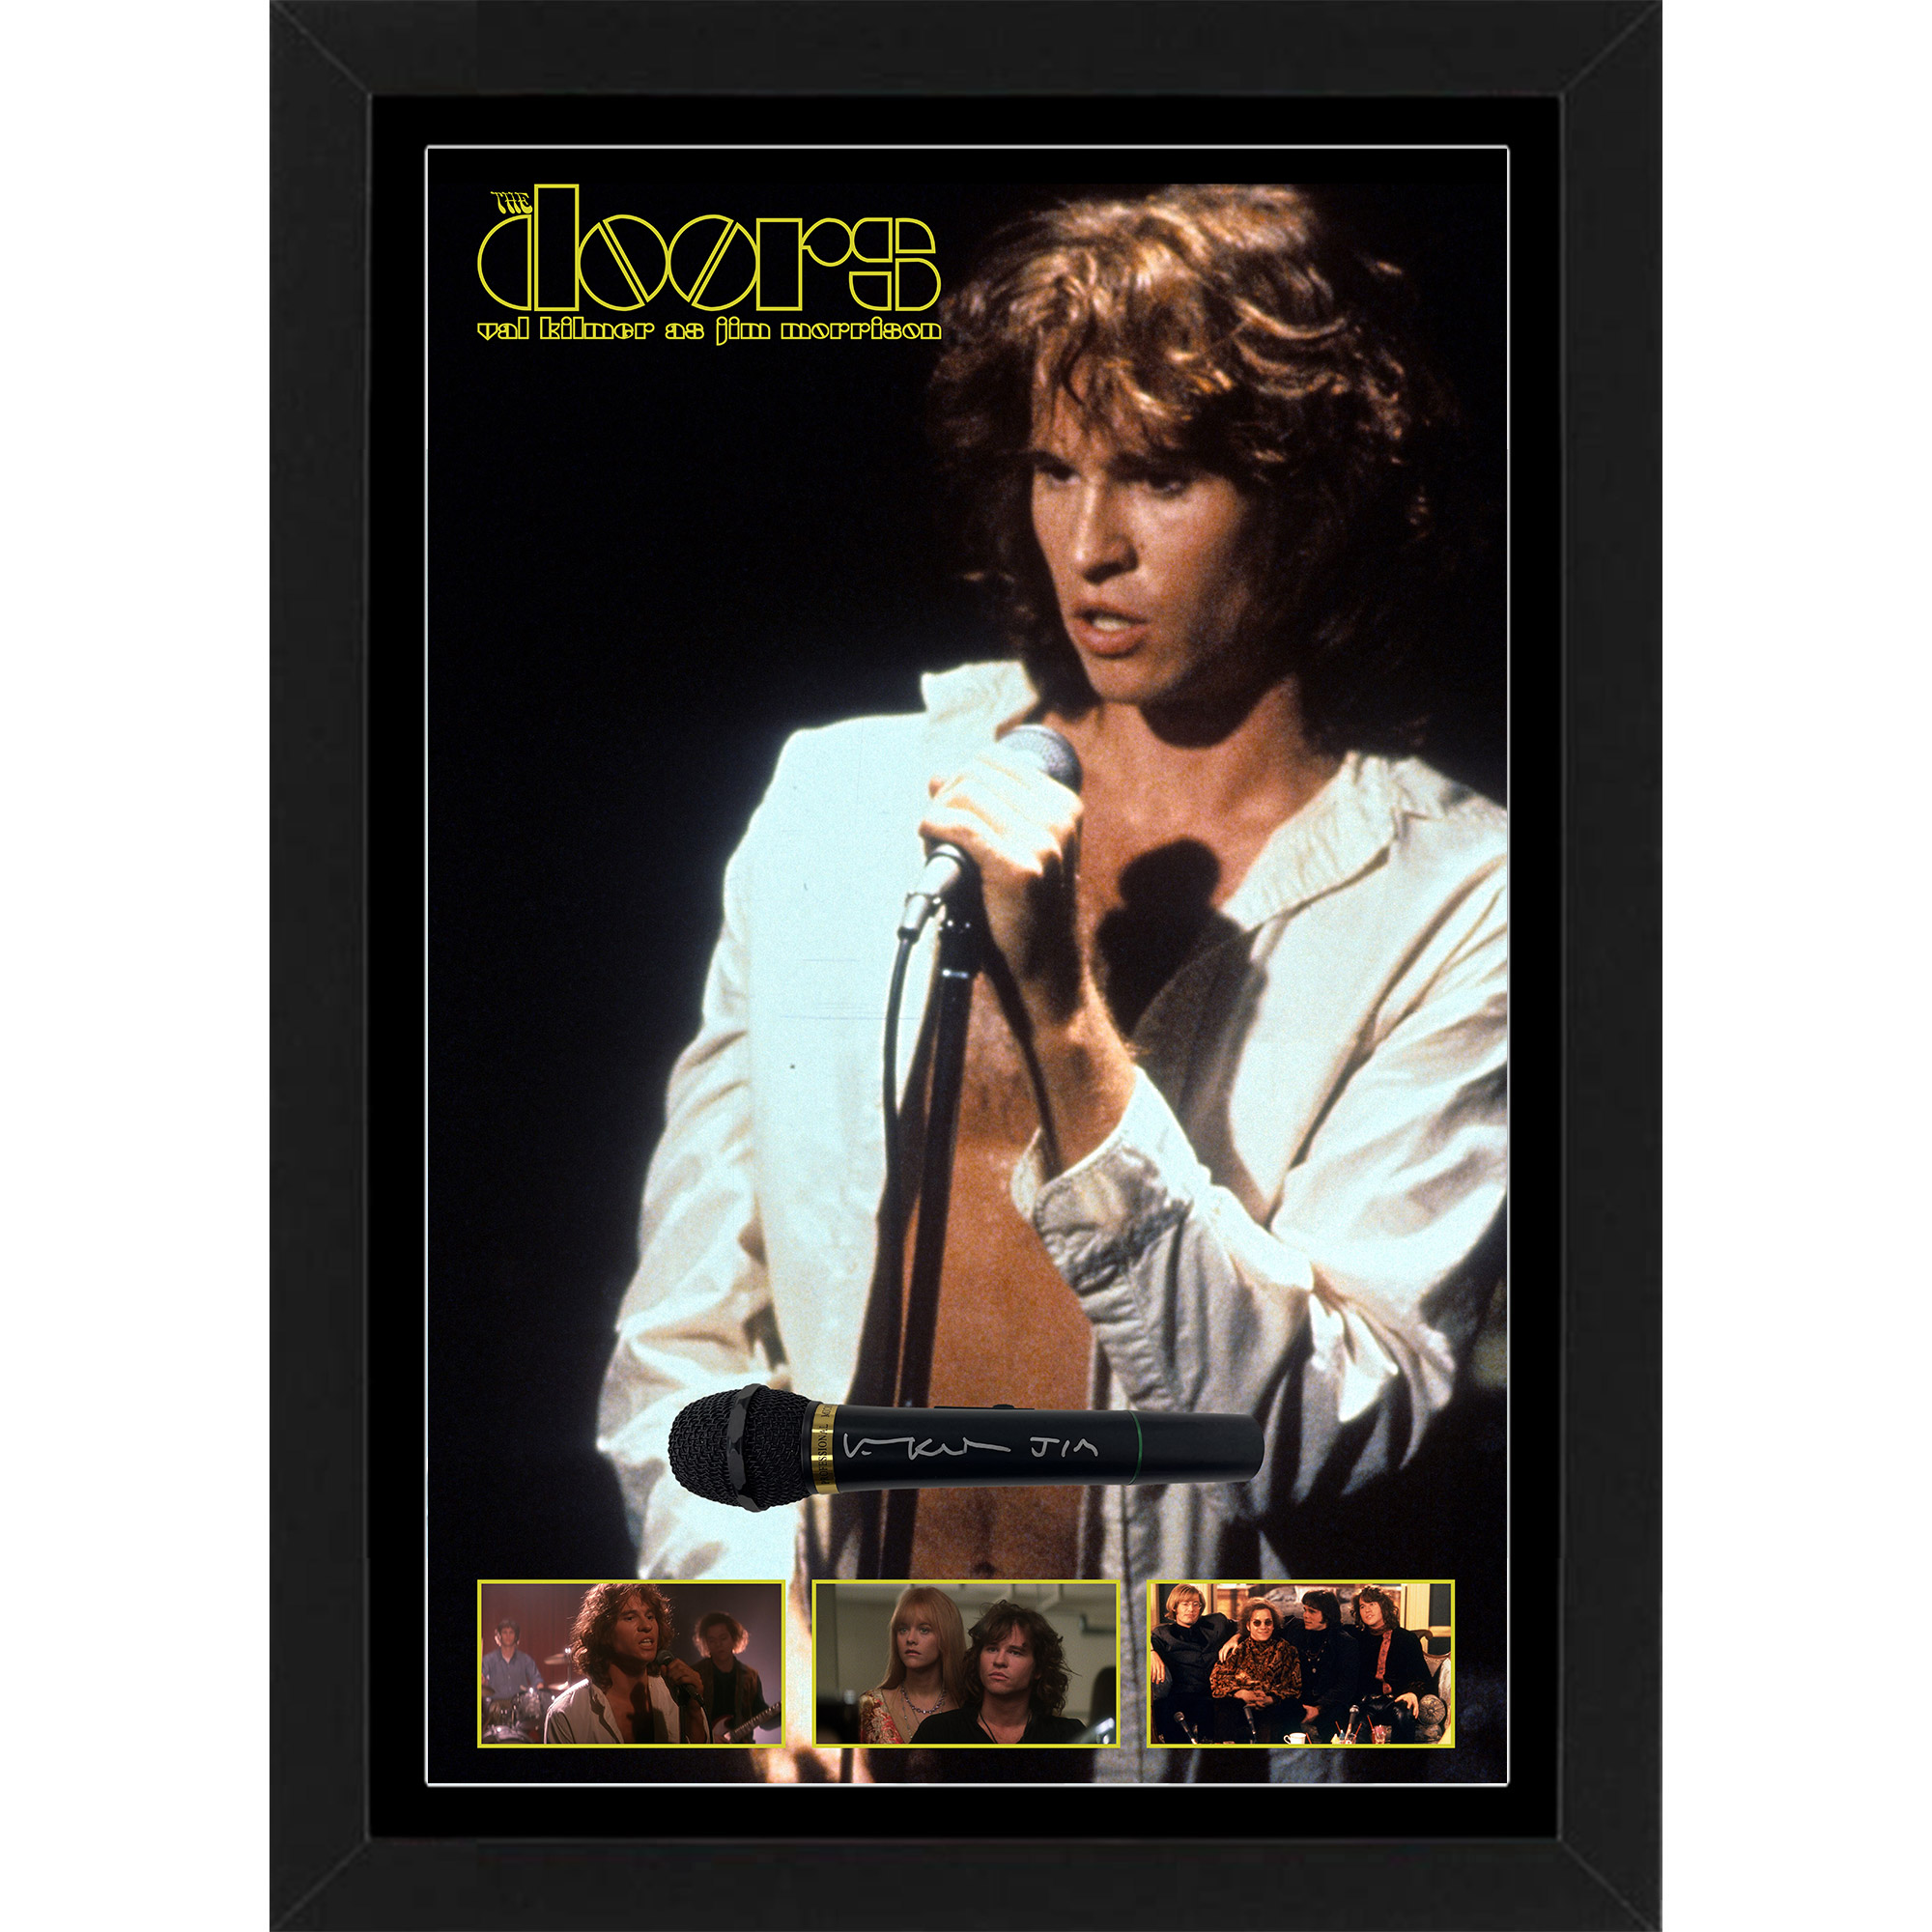 Val Kilmer – “The Doors (1991)” Signed & Framed...